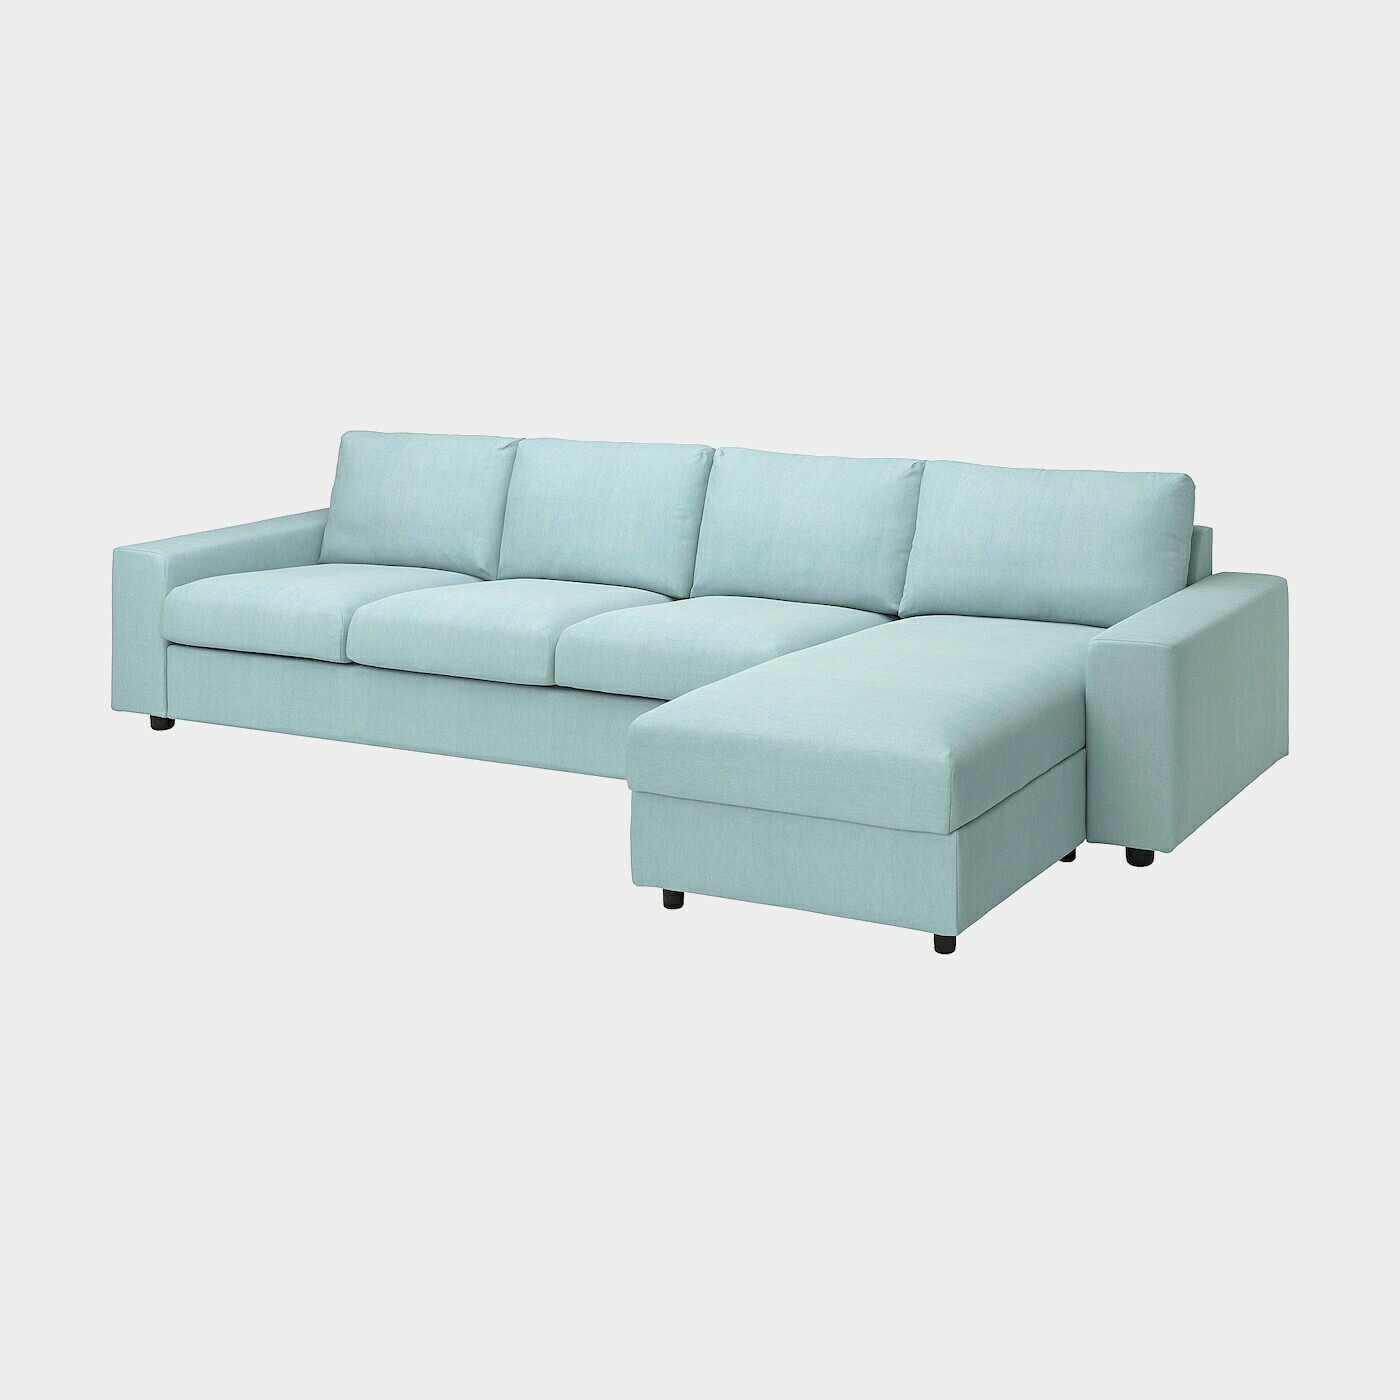 VIMLE Bezug für 4er-Sofa mit Récam  -  - Möbel Ideen für dein Zuhause von Home Trends. Möbel Trends von Social Media Influencer für dein Skandi Zuhause.